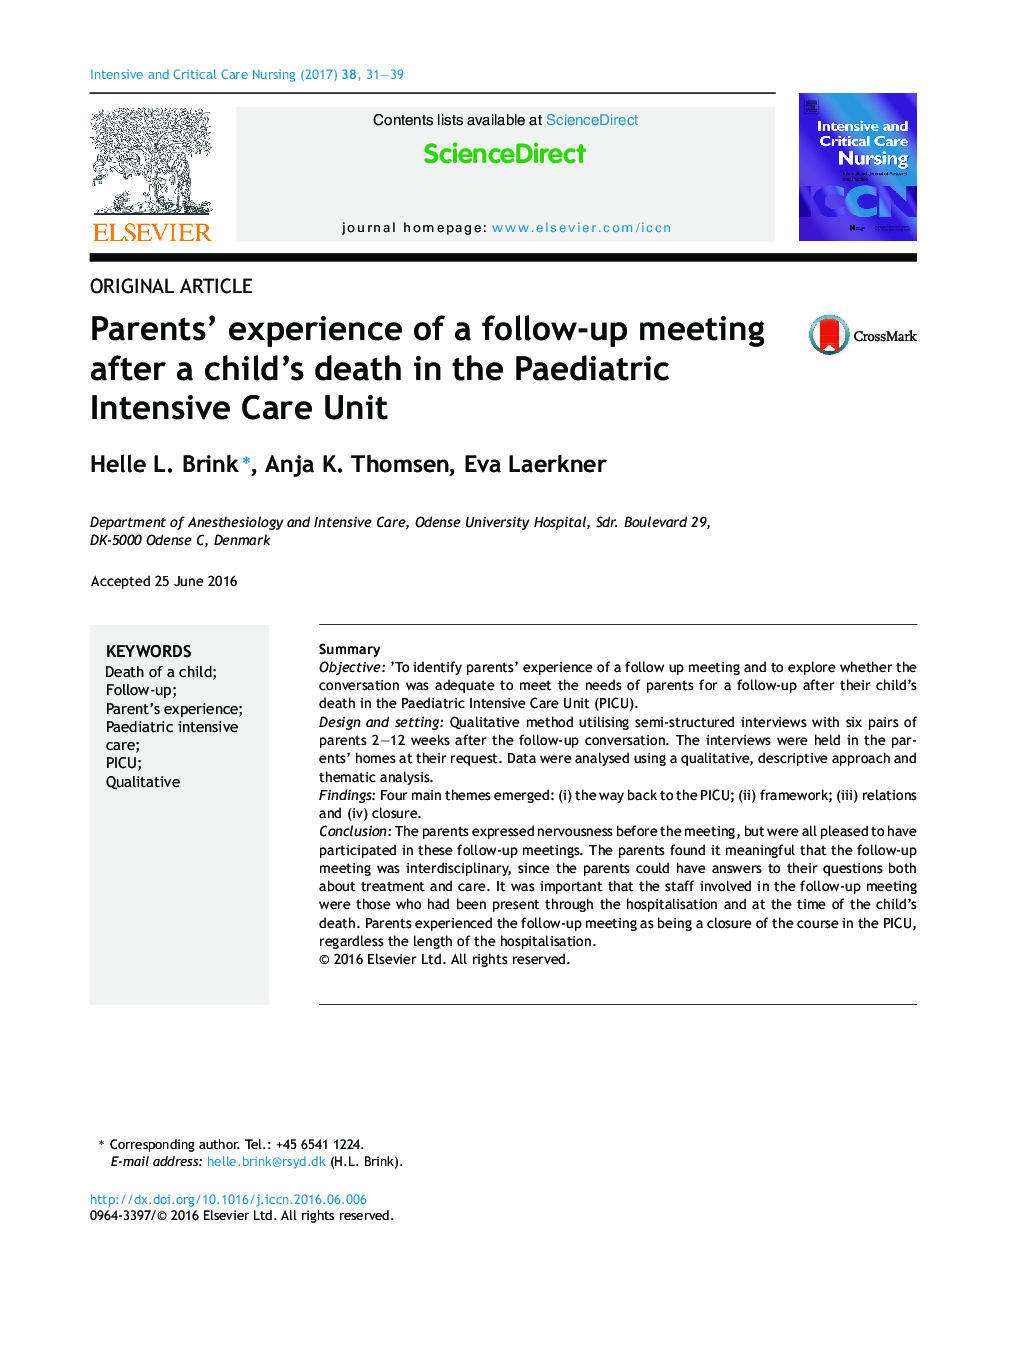 مقاله اصلی تجربه پارس از یک جلسه پیگیری پس از مرگ کودک در بخش مراقبت های ویژه کودکان 